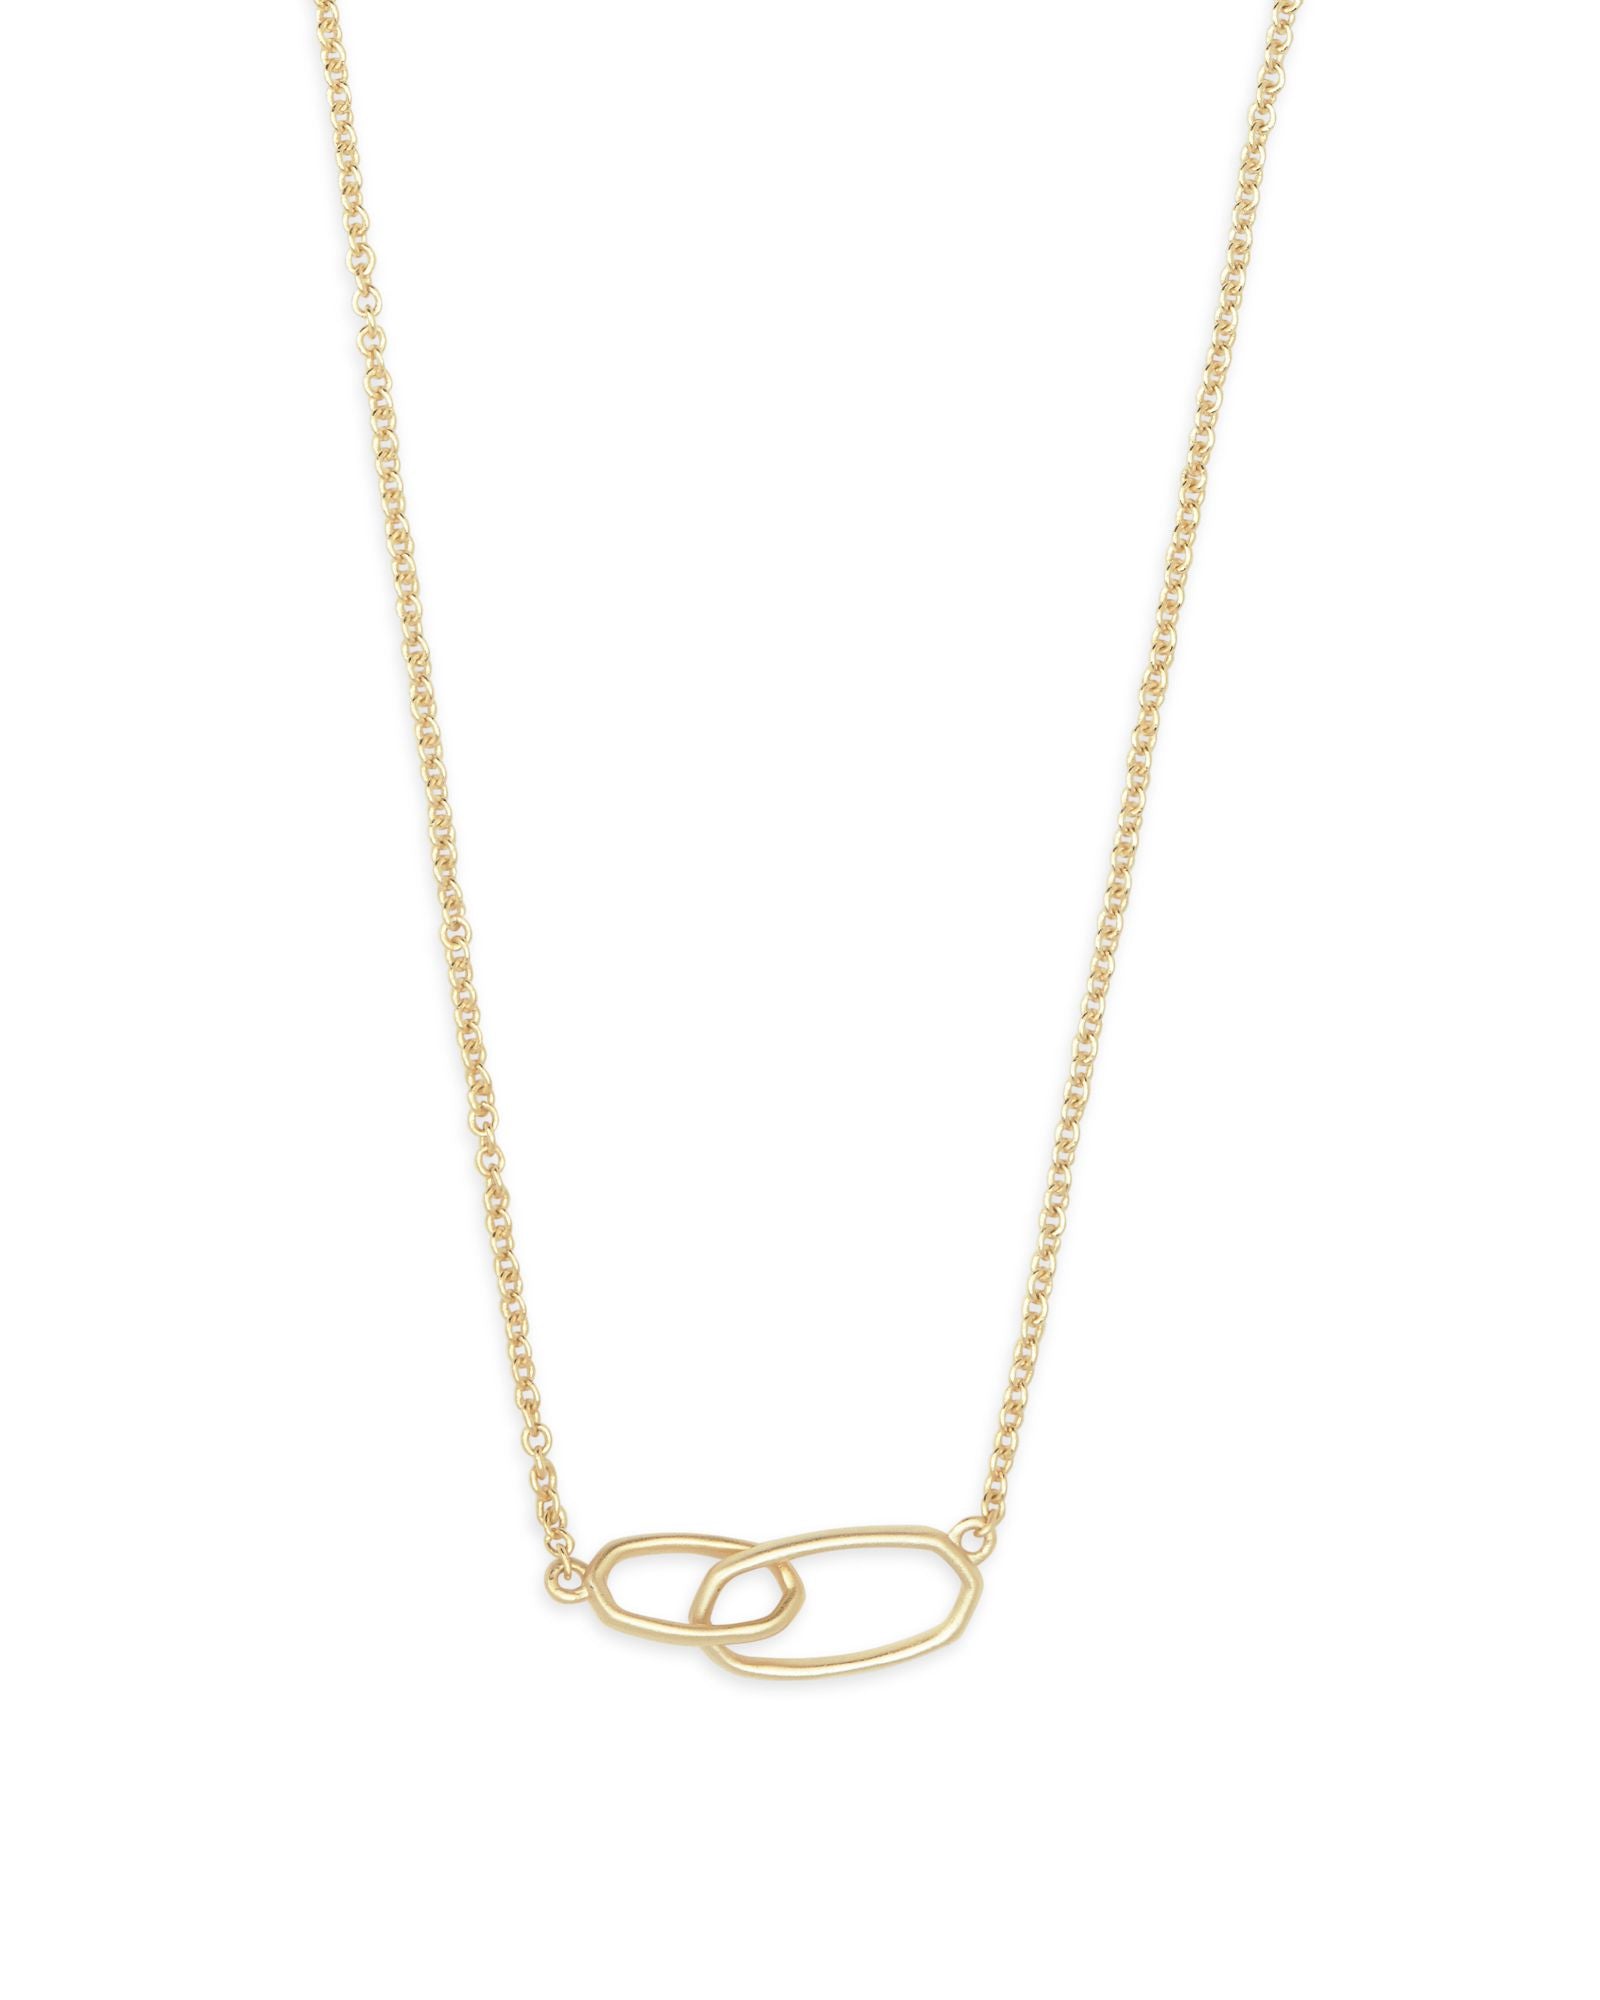 Kendra Scott : Elisa Gold Multi Strand Necklace In Iridescent Drusy -  Annies Hallmark and Gretchens Hallmark $90.00